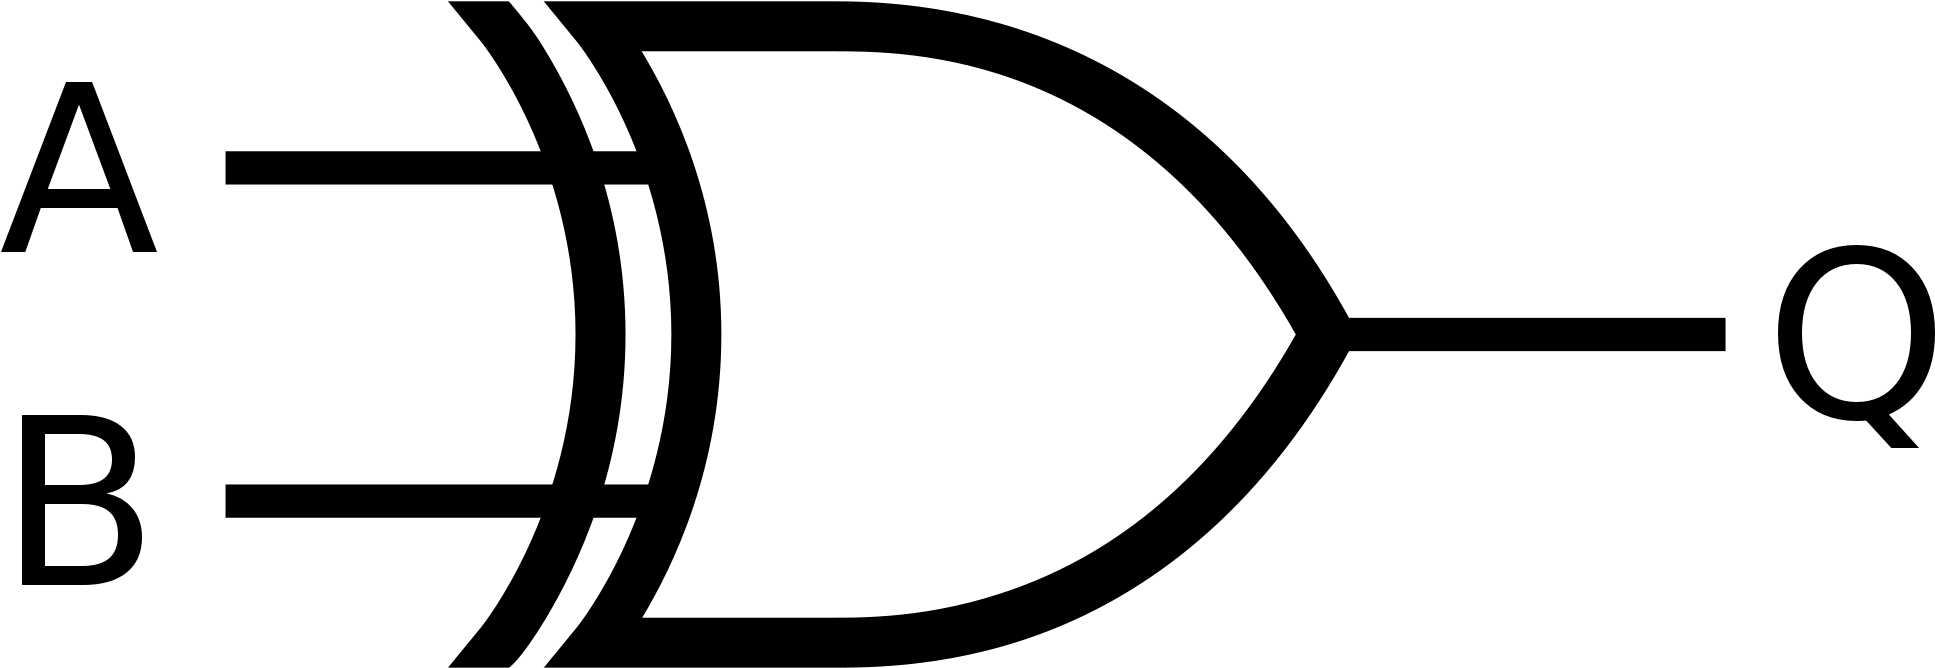 Gate Clipart Simple Gate - Xor Logic Gate Symbol (2000x833)